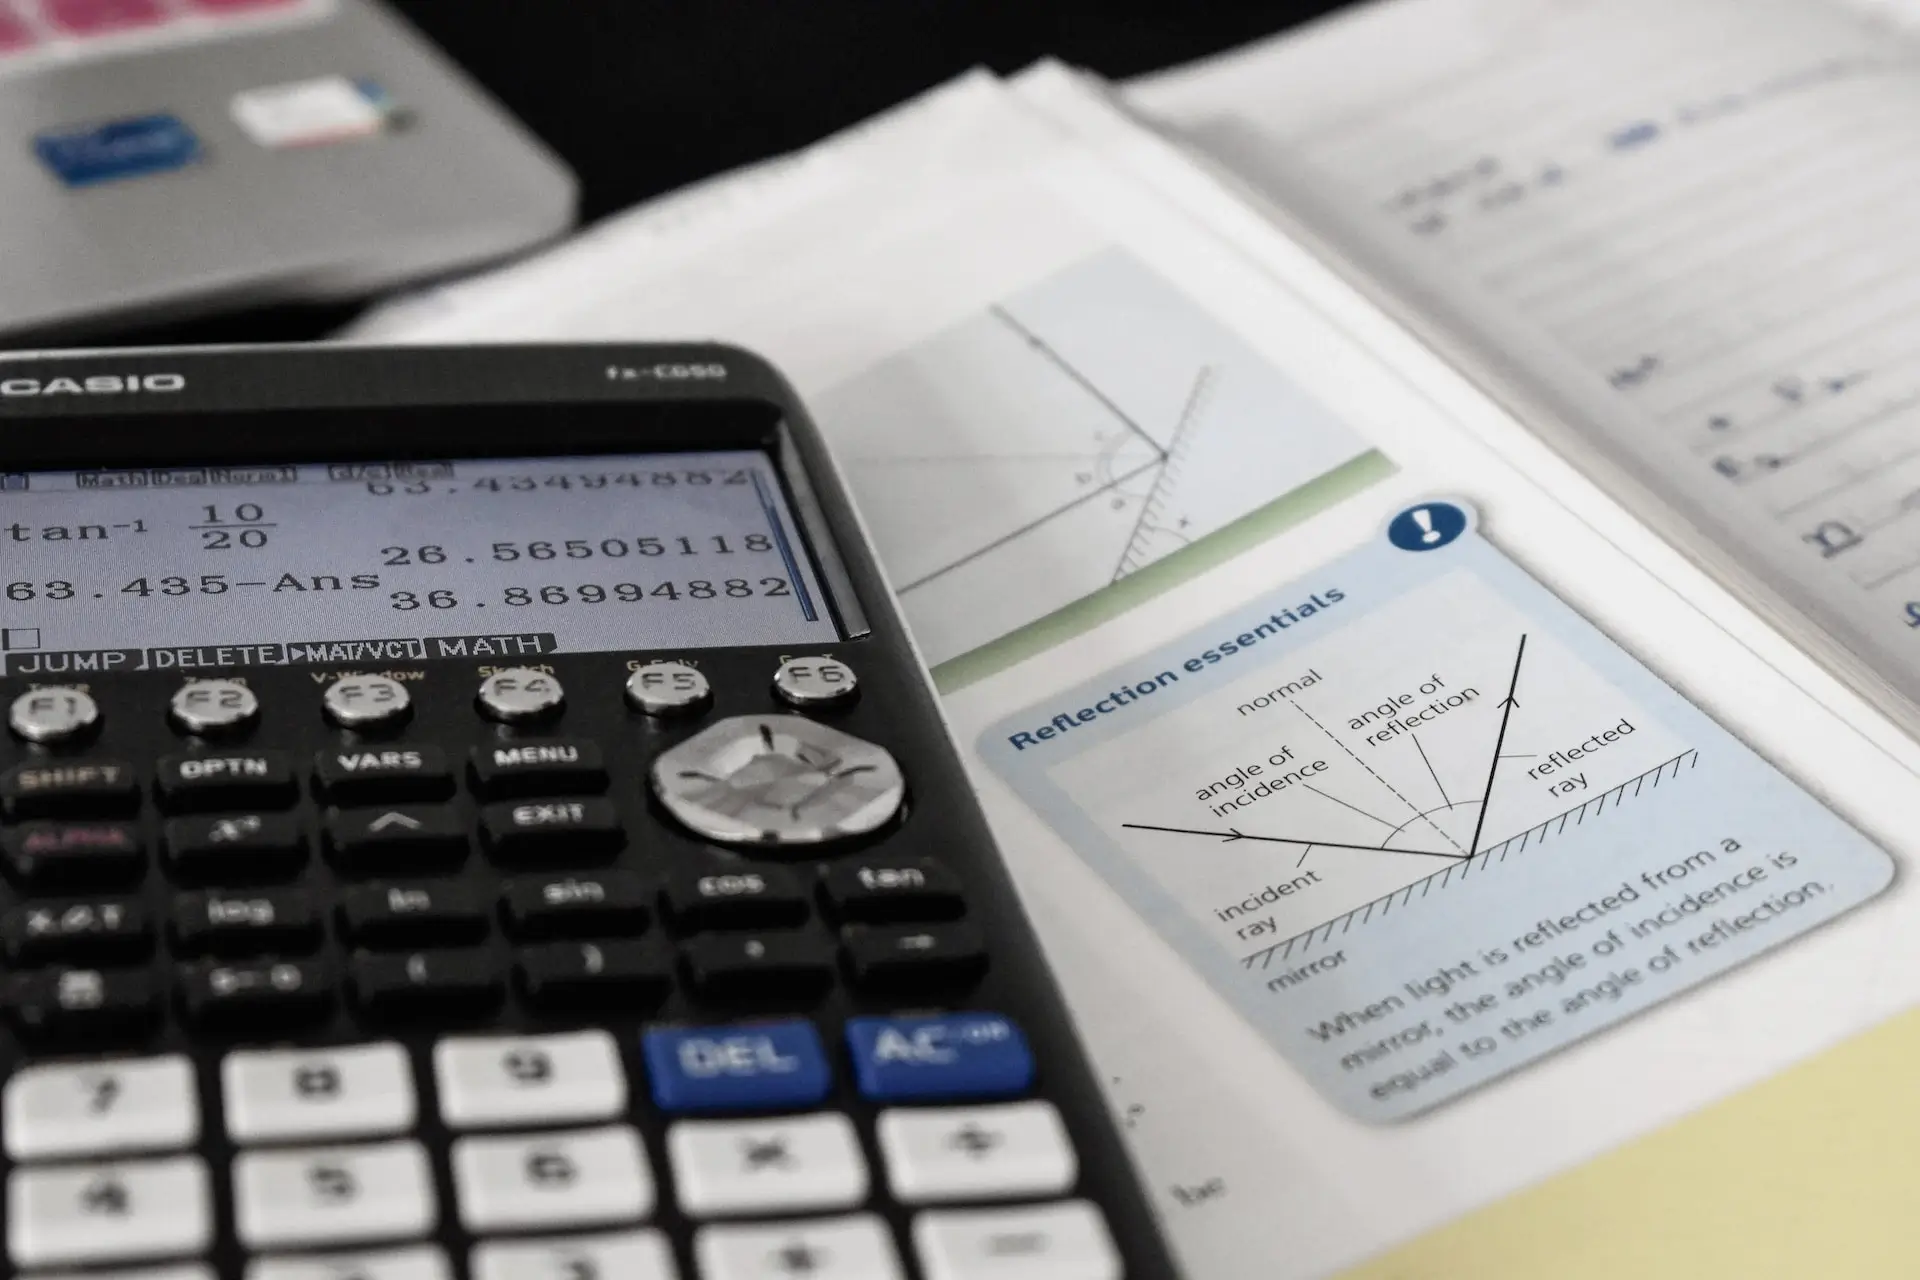 Kalkulator naukowy wyświetlający na ekranie obliczenia trygonometryczne, z formułami wydrukowanymi na arkuszu roboczym w tle, co wskazuje na środowisko do nauki.